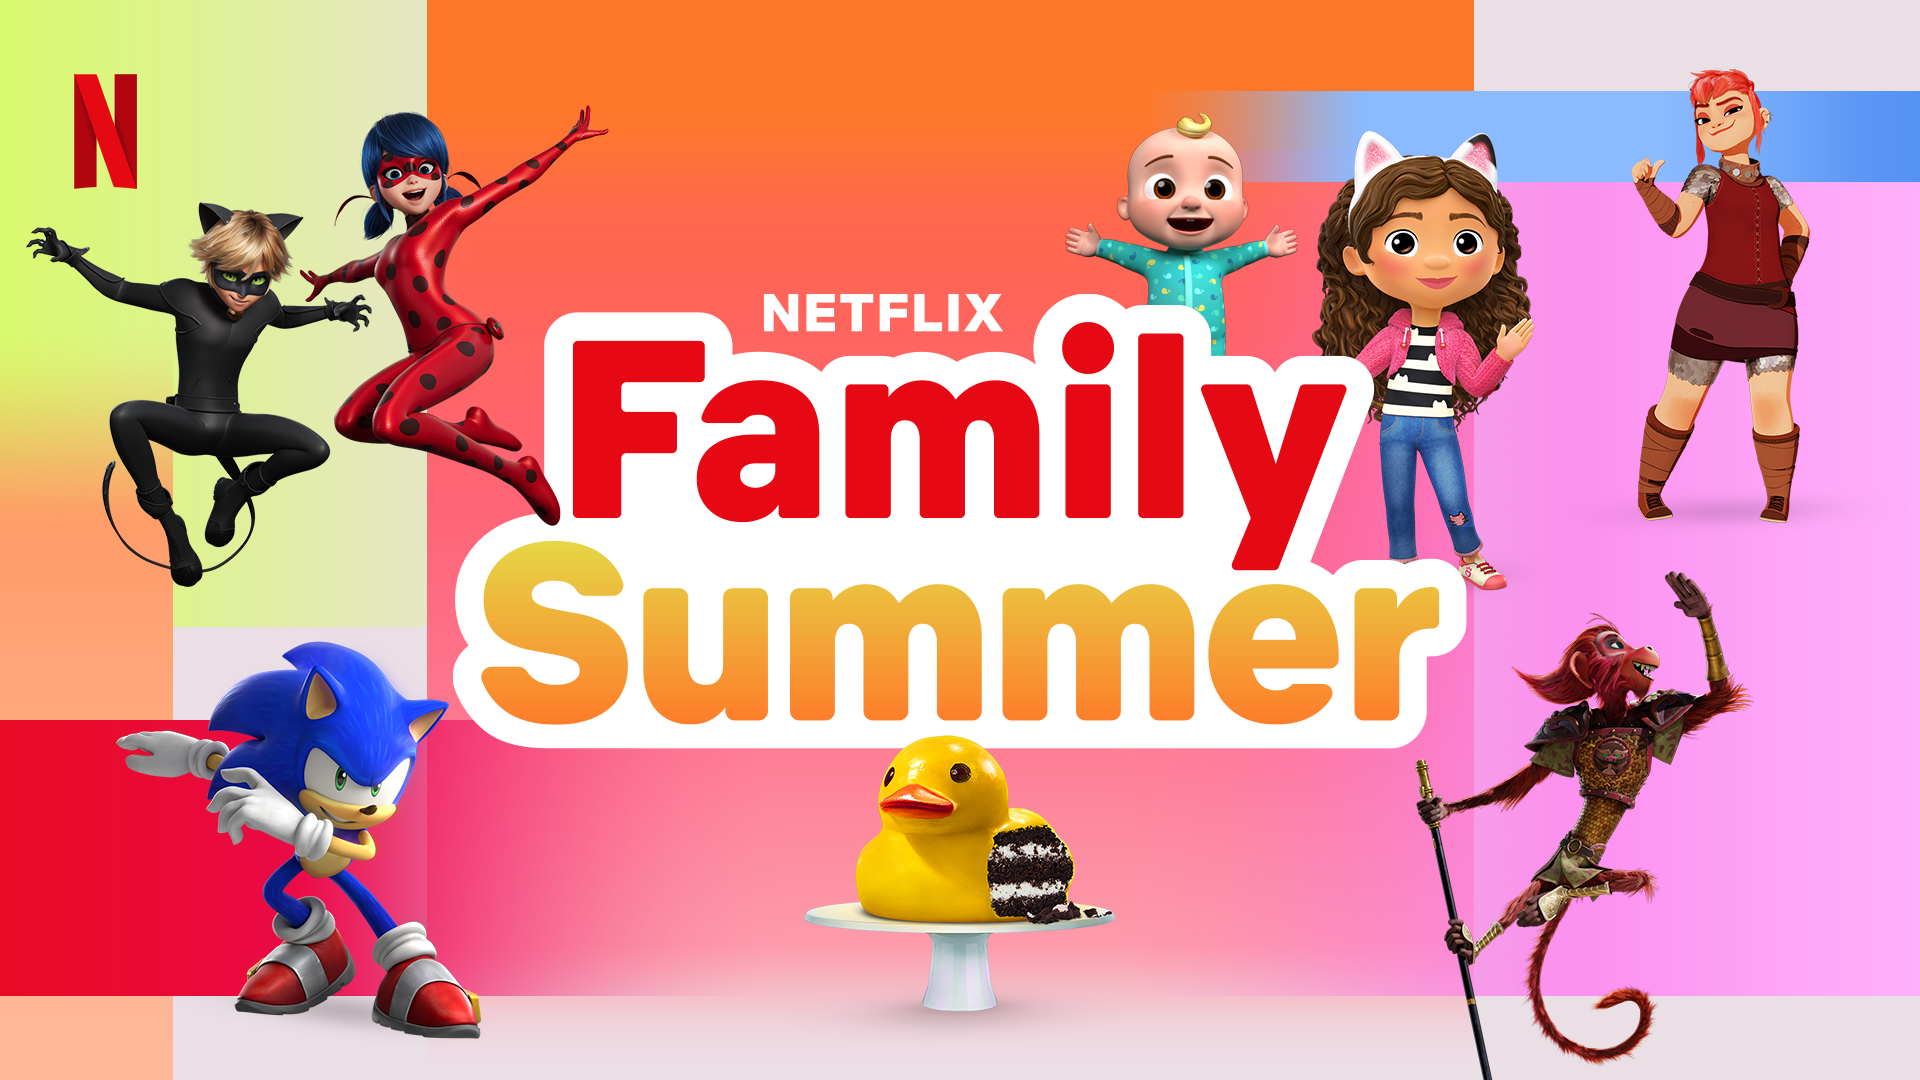 Netflix anunţă noi filme şi seriale pentru copii şi familie vara aceasta